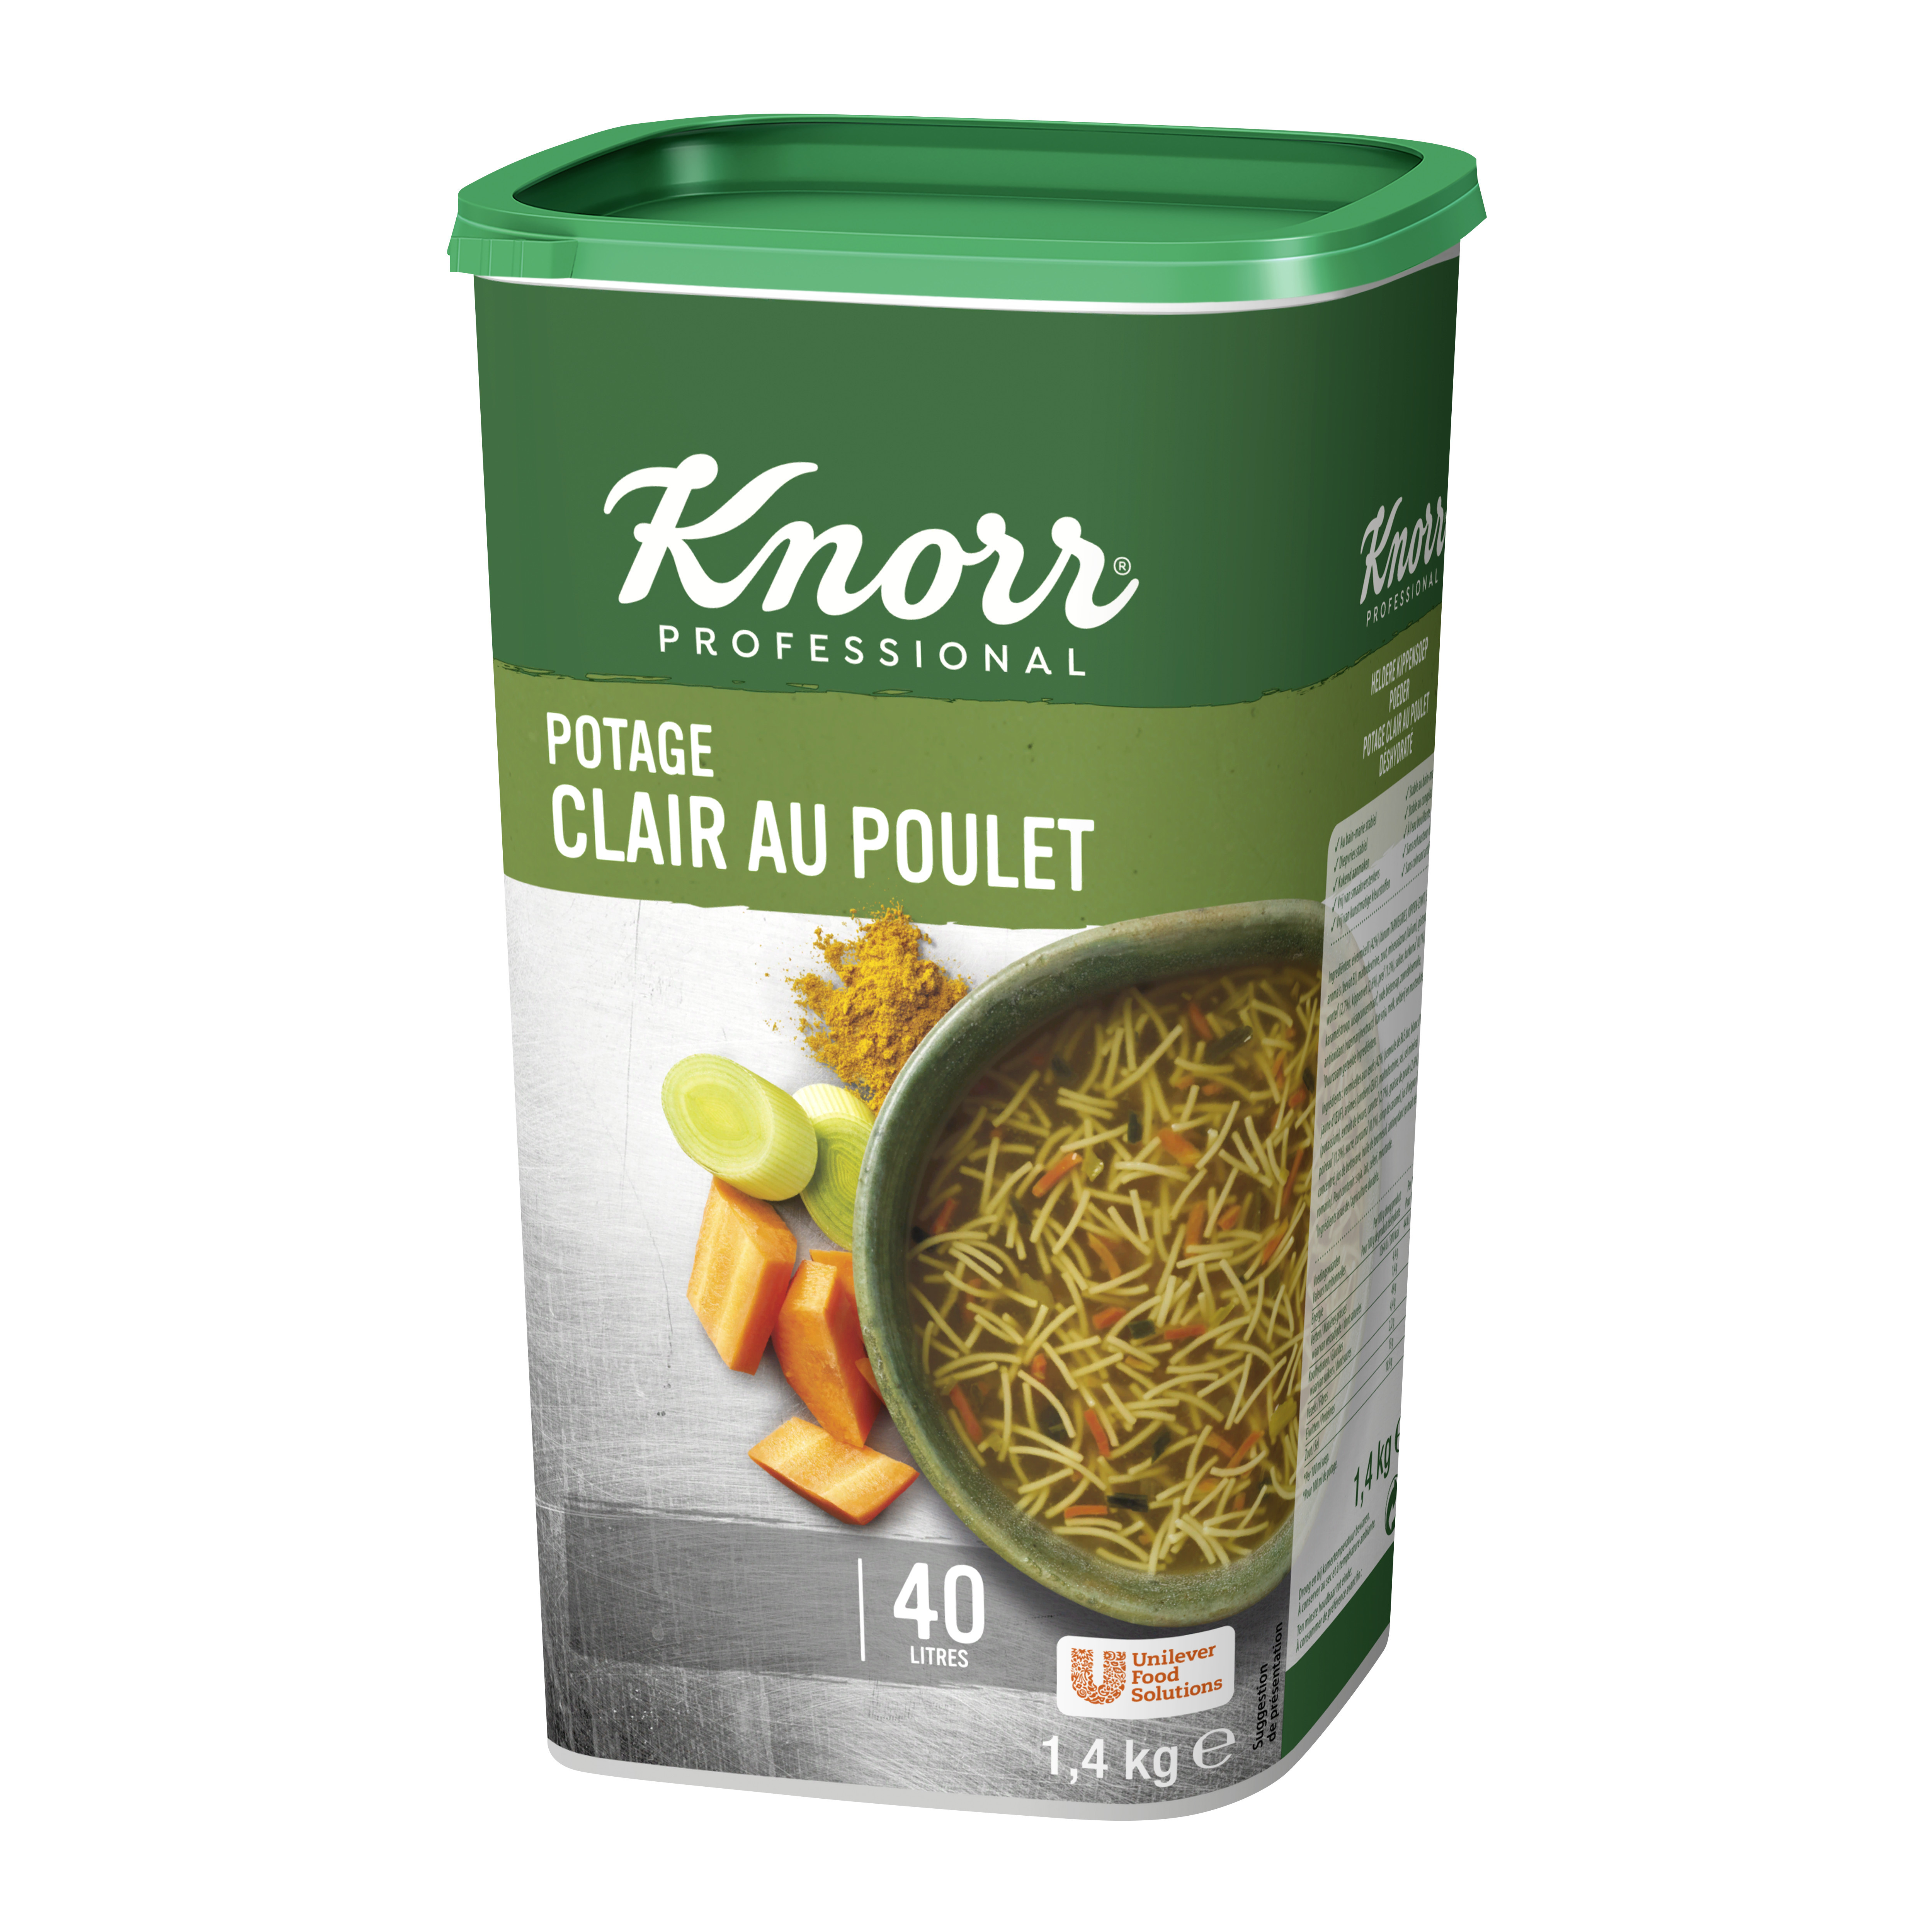 Knorr soupe claire au poulet double chicken 1.4kg Professional